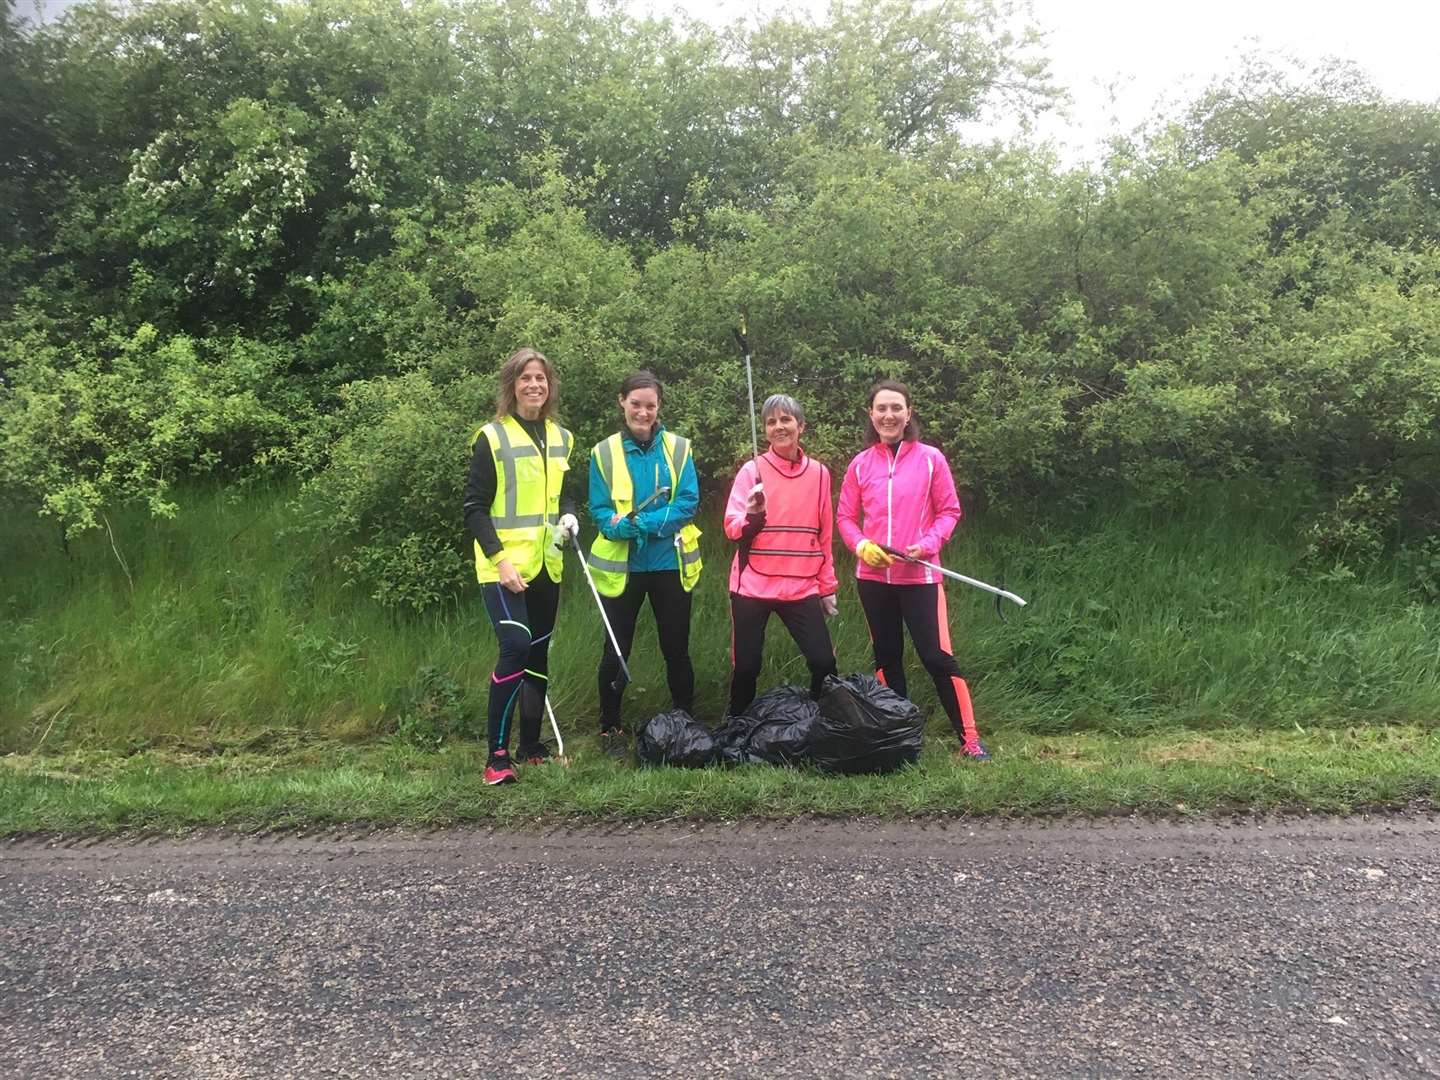 Catriona Hill, Jenny Rush, Karen Swinden and Elissa Steven collecting the litter.